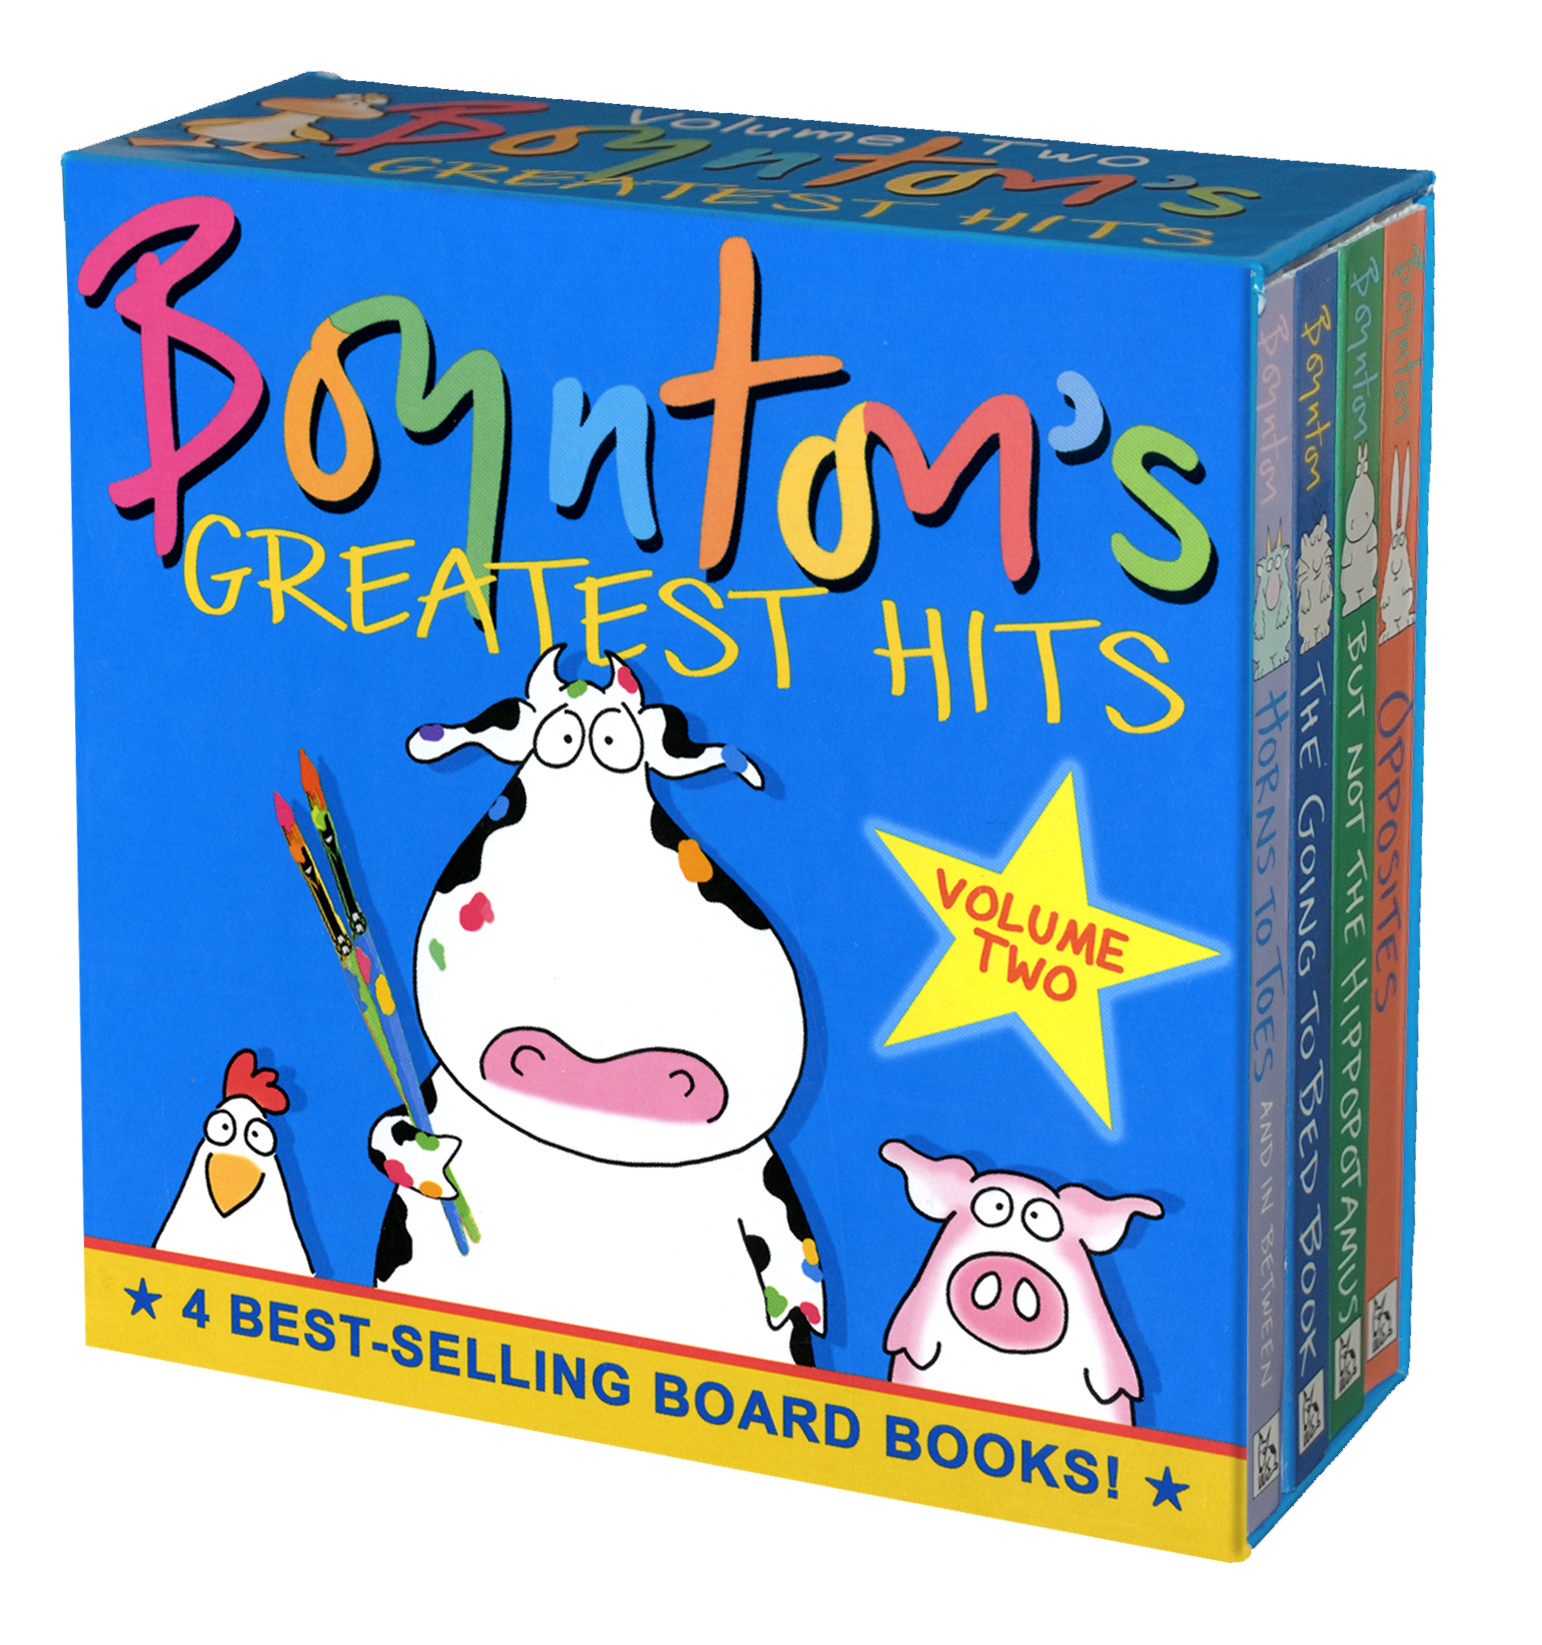 Boynton's Greatest Hits